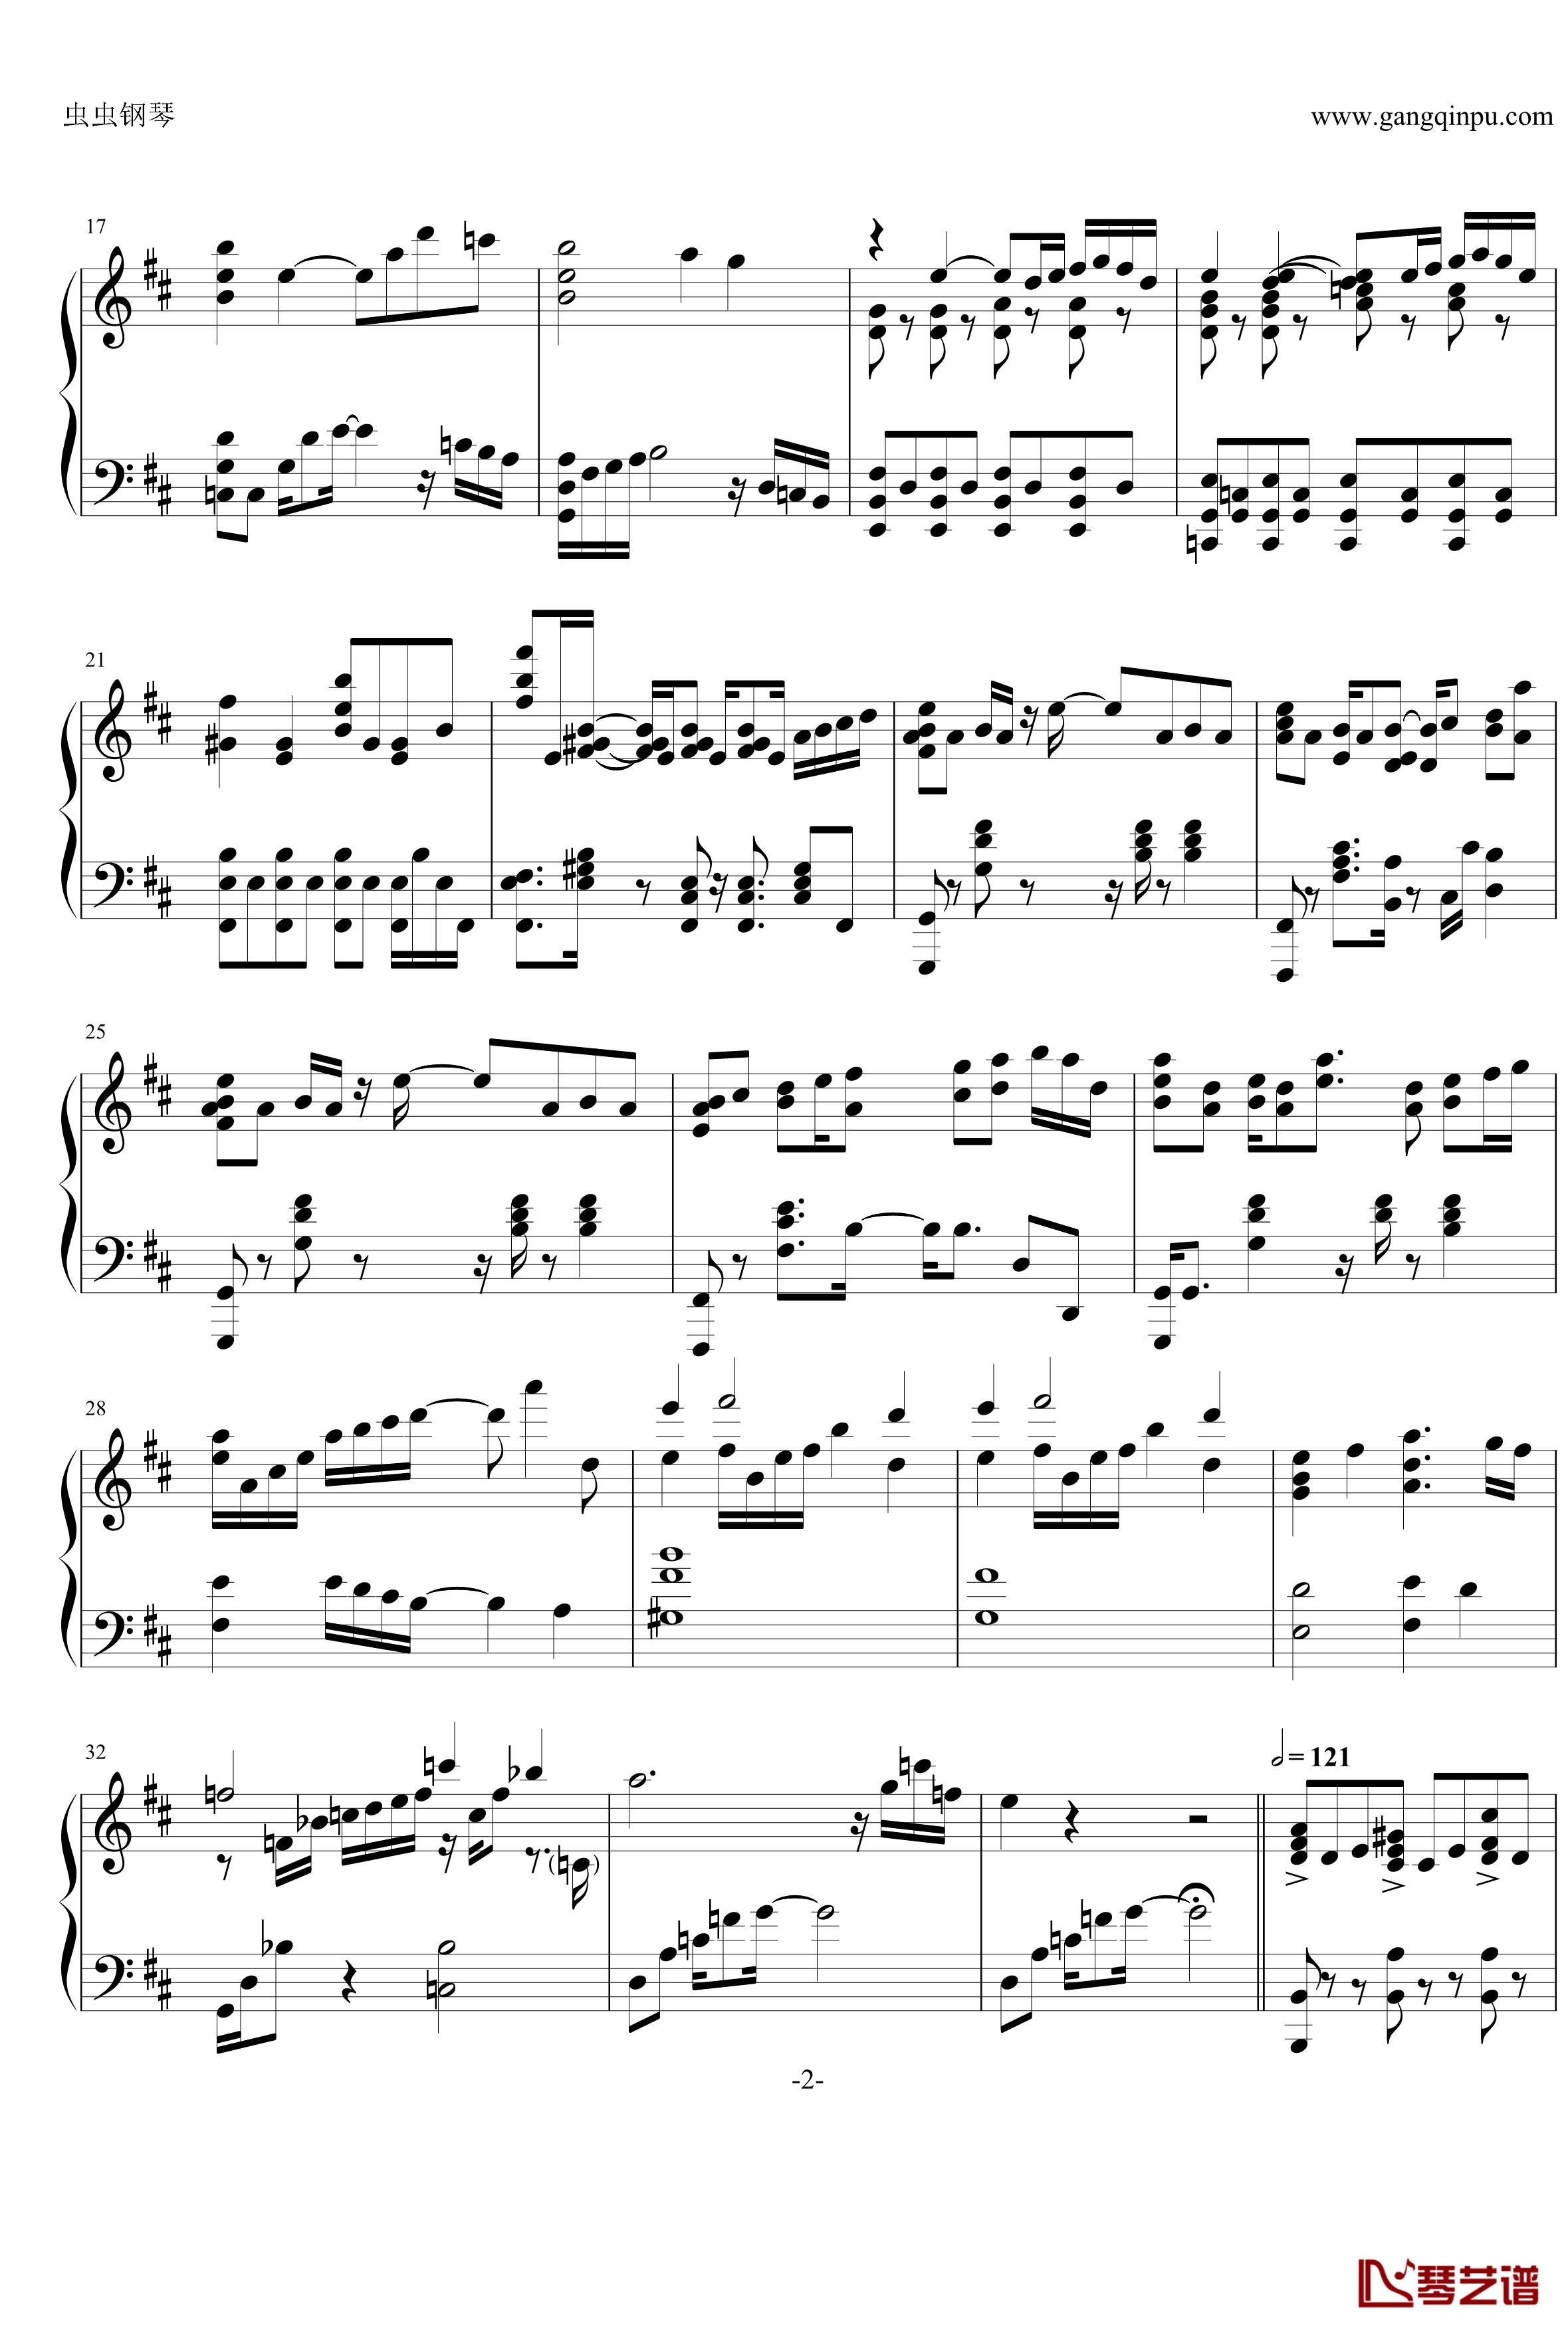 最终幻想13雷霆主题音乐钢琴谱-ライトニングのテーマ 閃光-最终幻想2